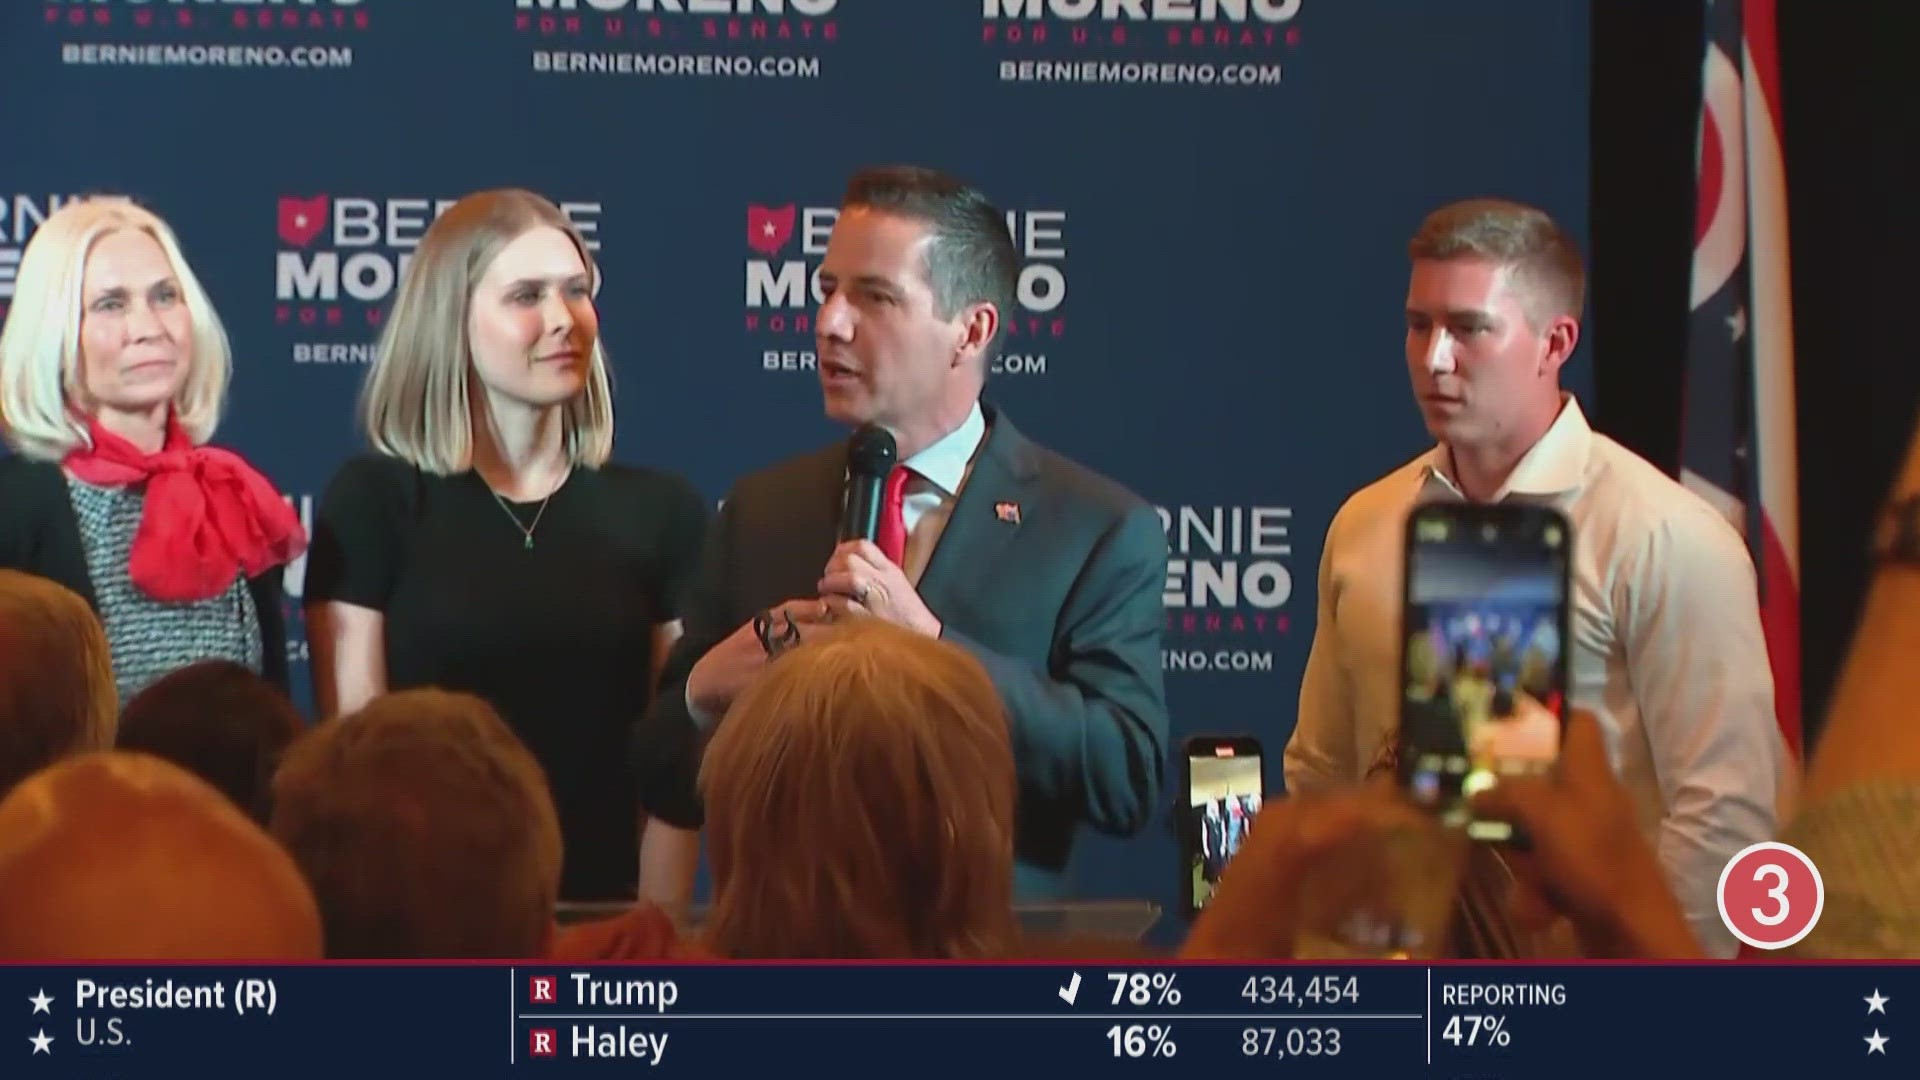 The Associated Press projects Bernie Moreno to win the Ohio Republican Senate Primary.